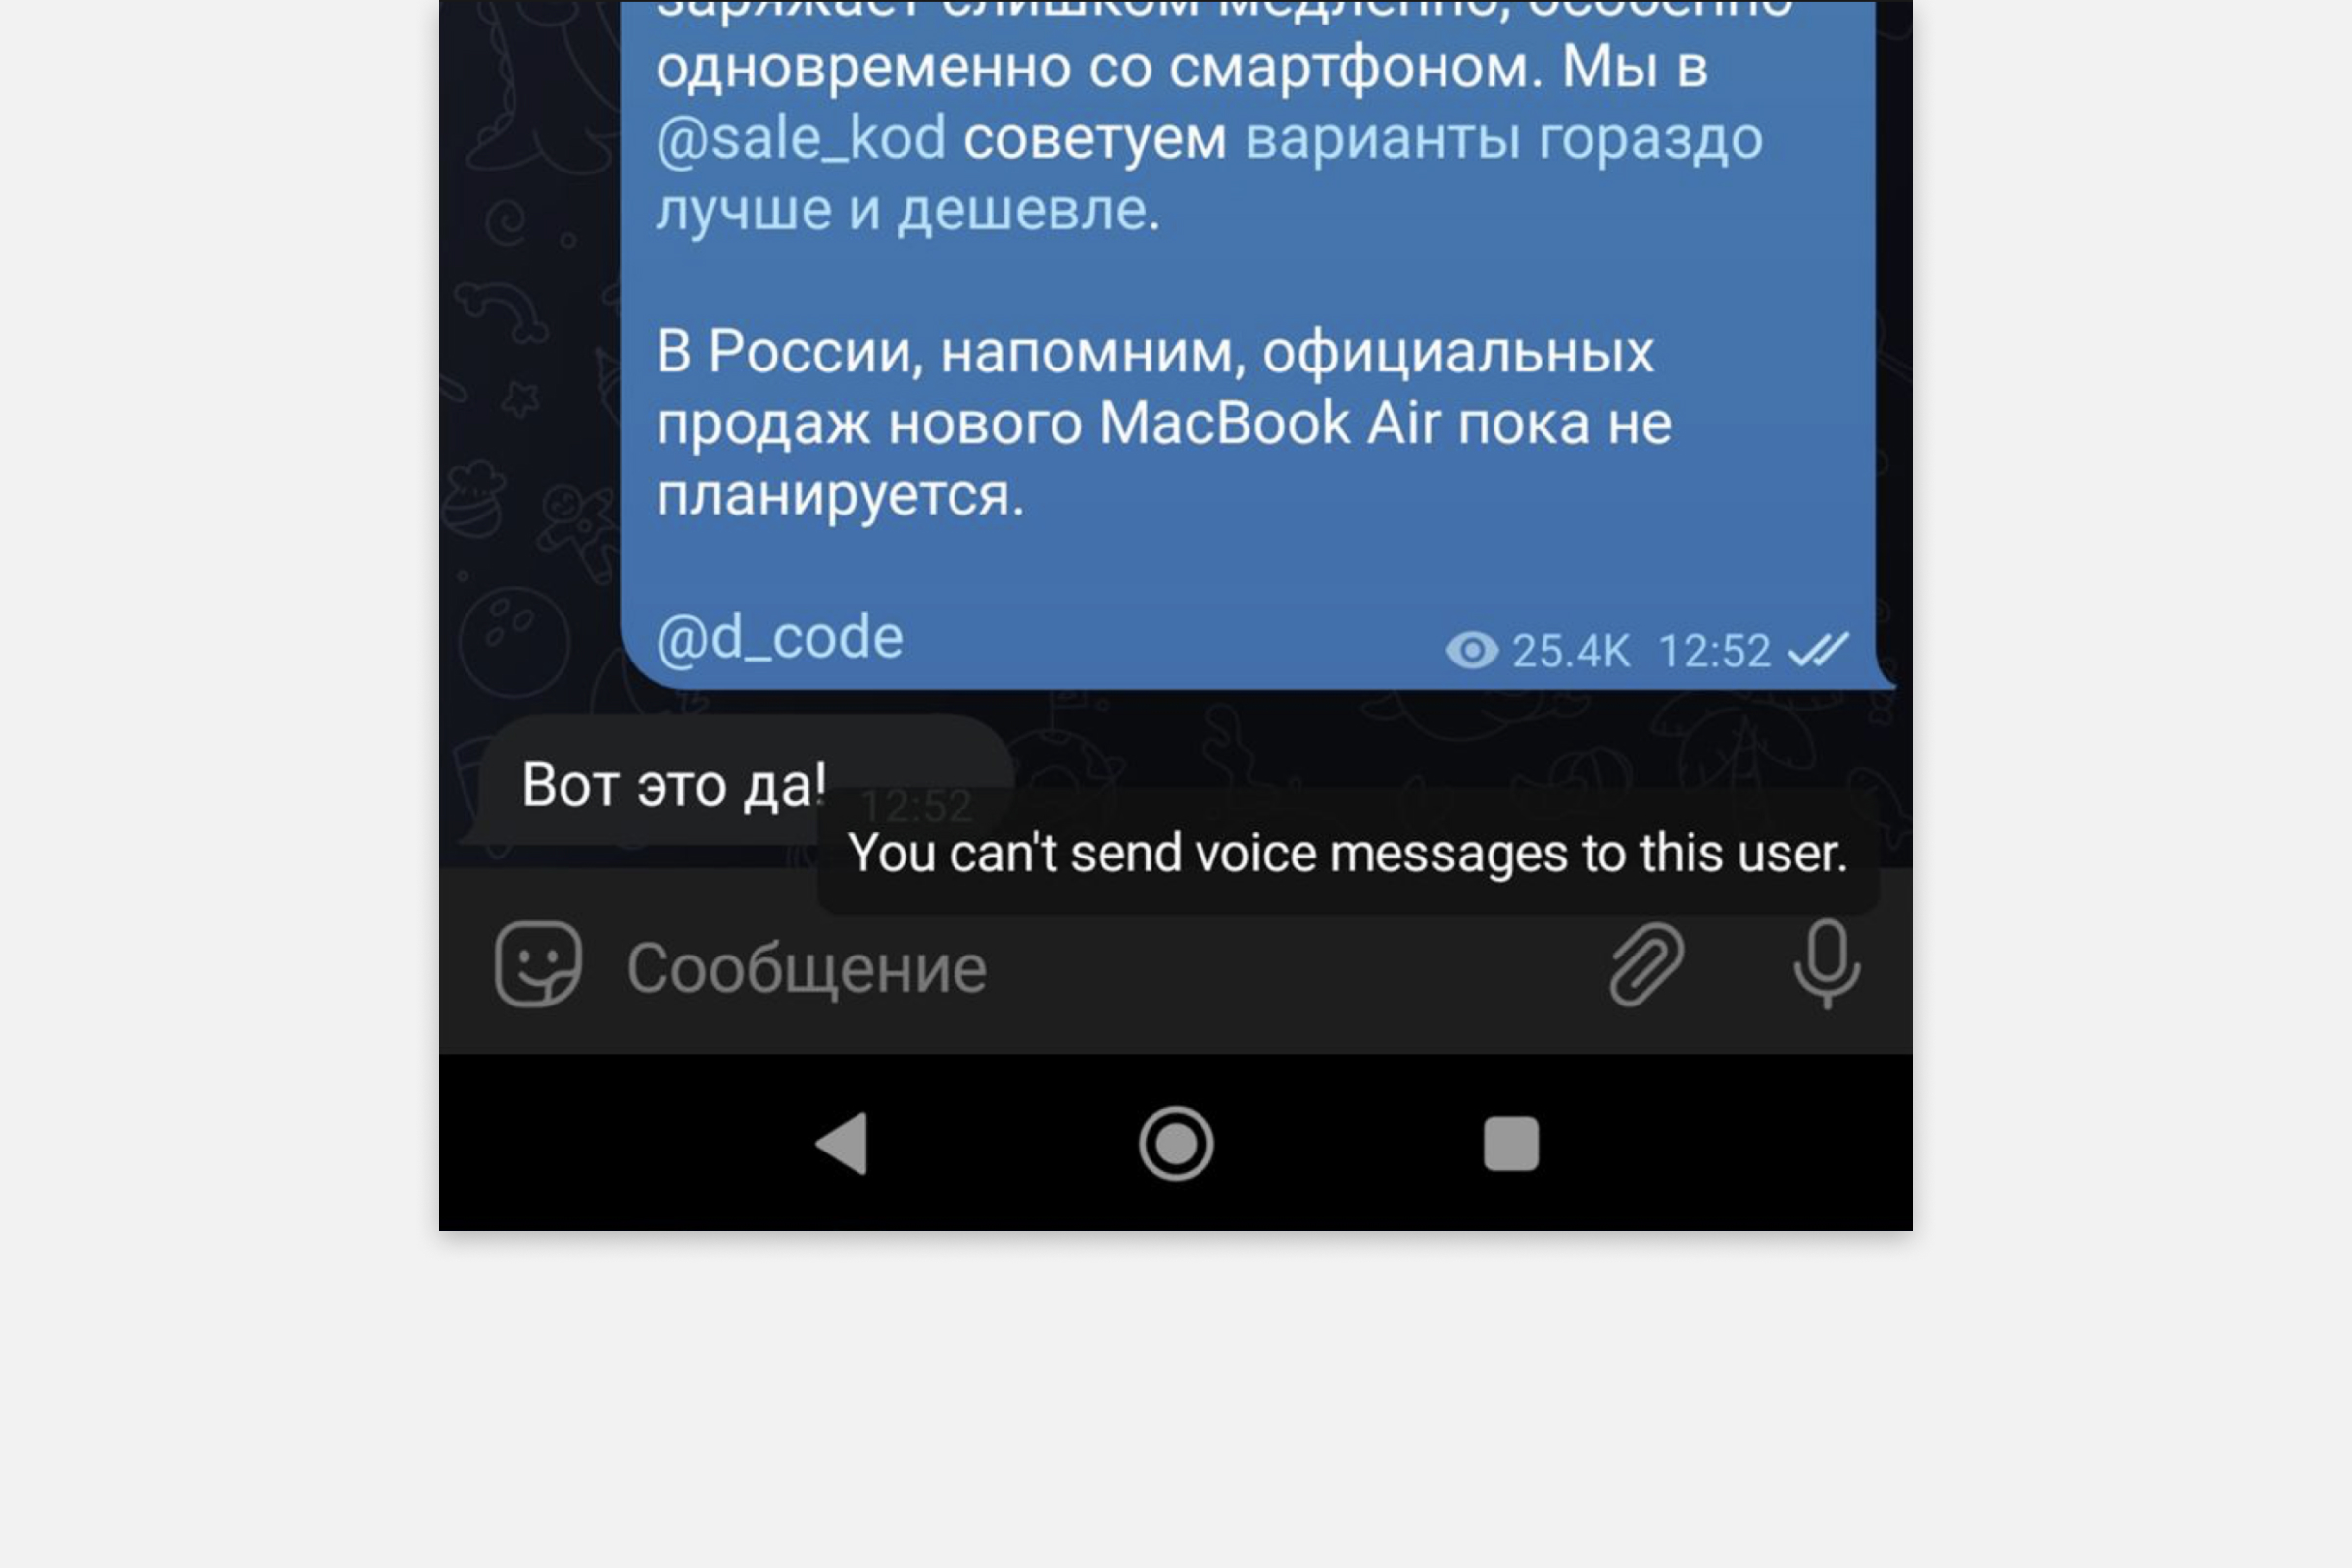 Код Дурова / Telegram